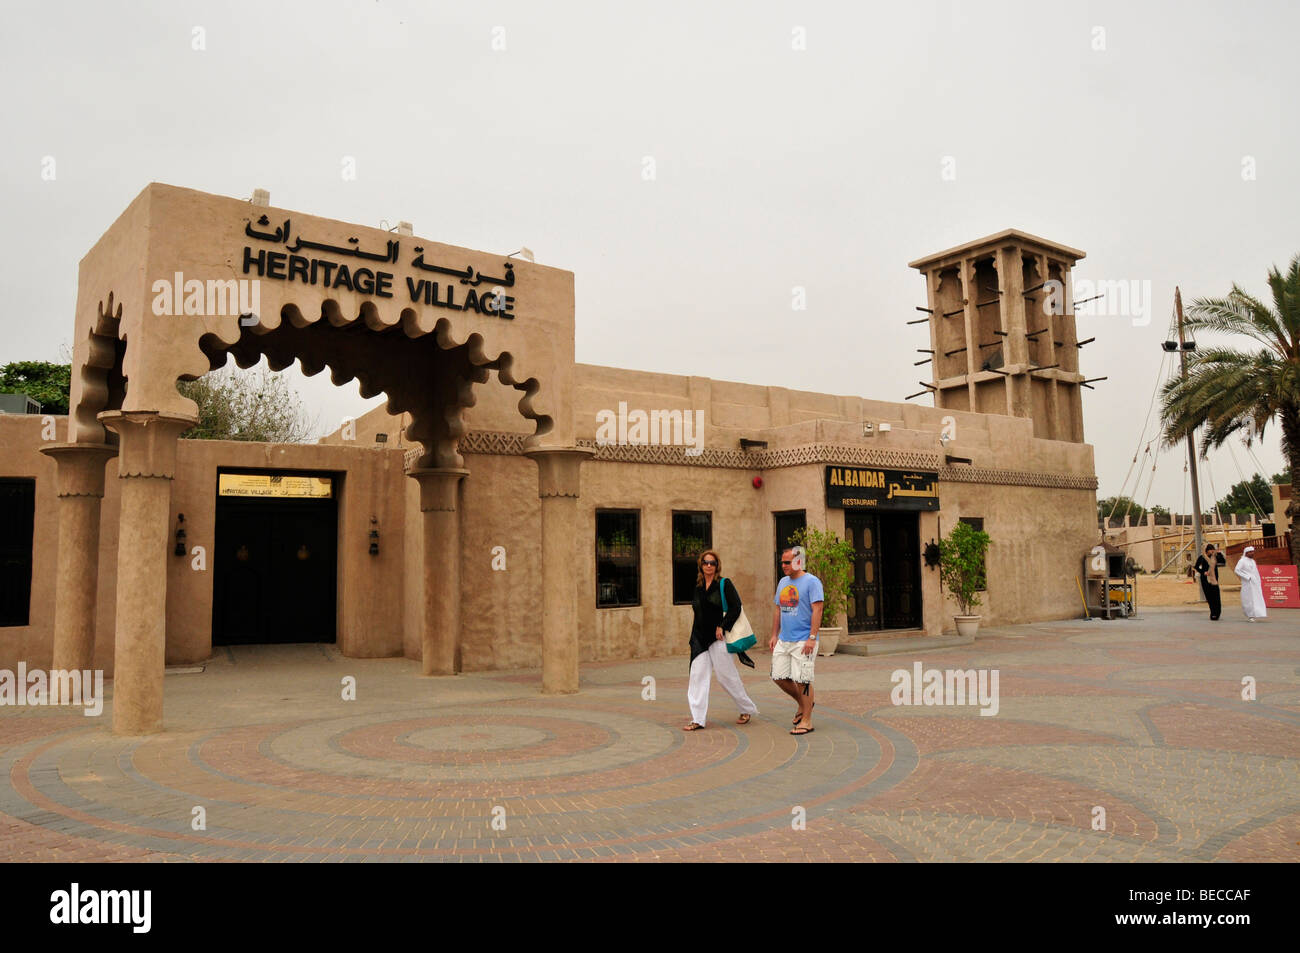 Heritage Village, Dubaï, Émirats arabes unis, France, Moyen Orient, Orient Banque D'Images